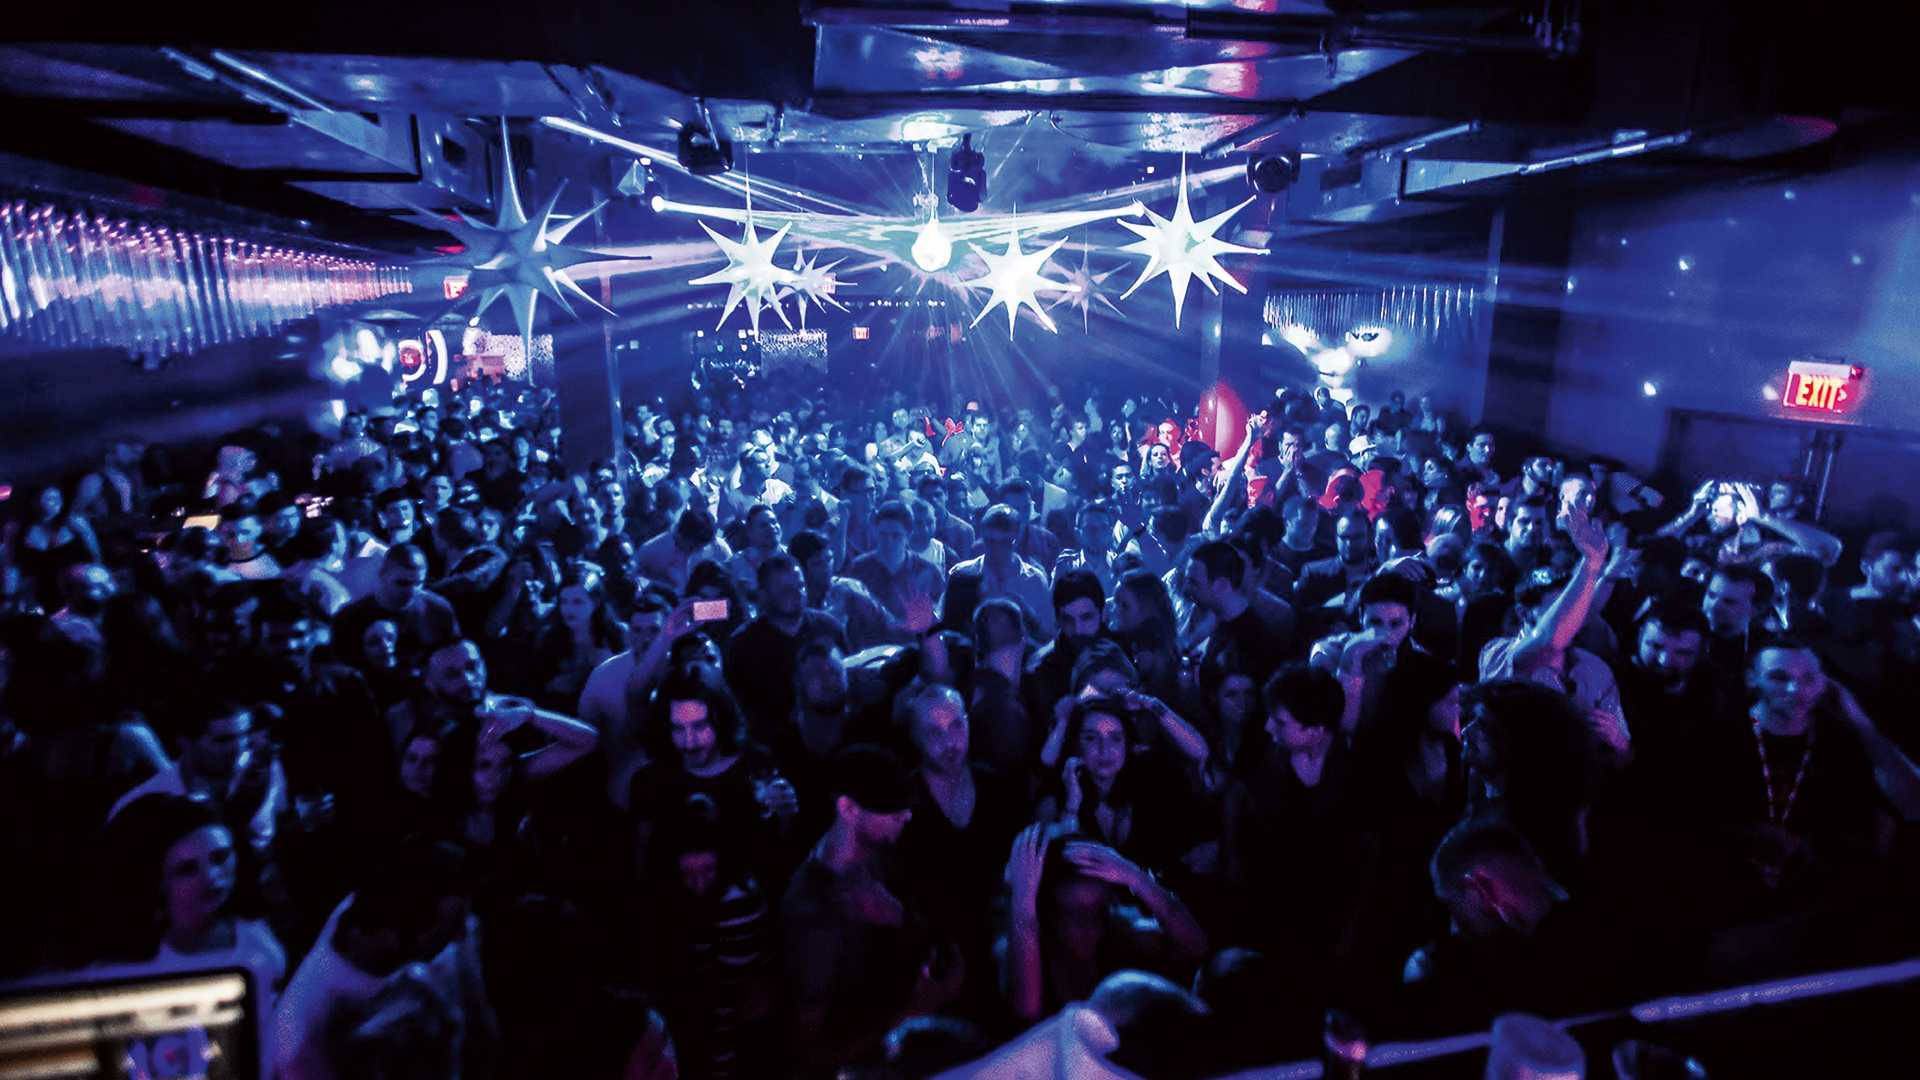 Download Spectacular Nightclub Scene Wallpaper | Wallpapers.com